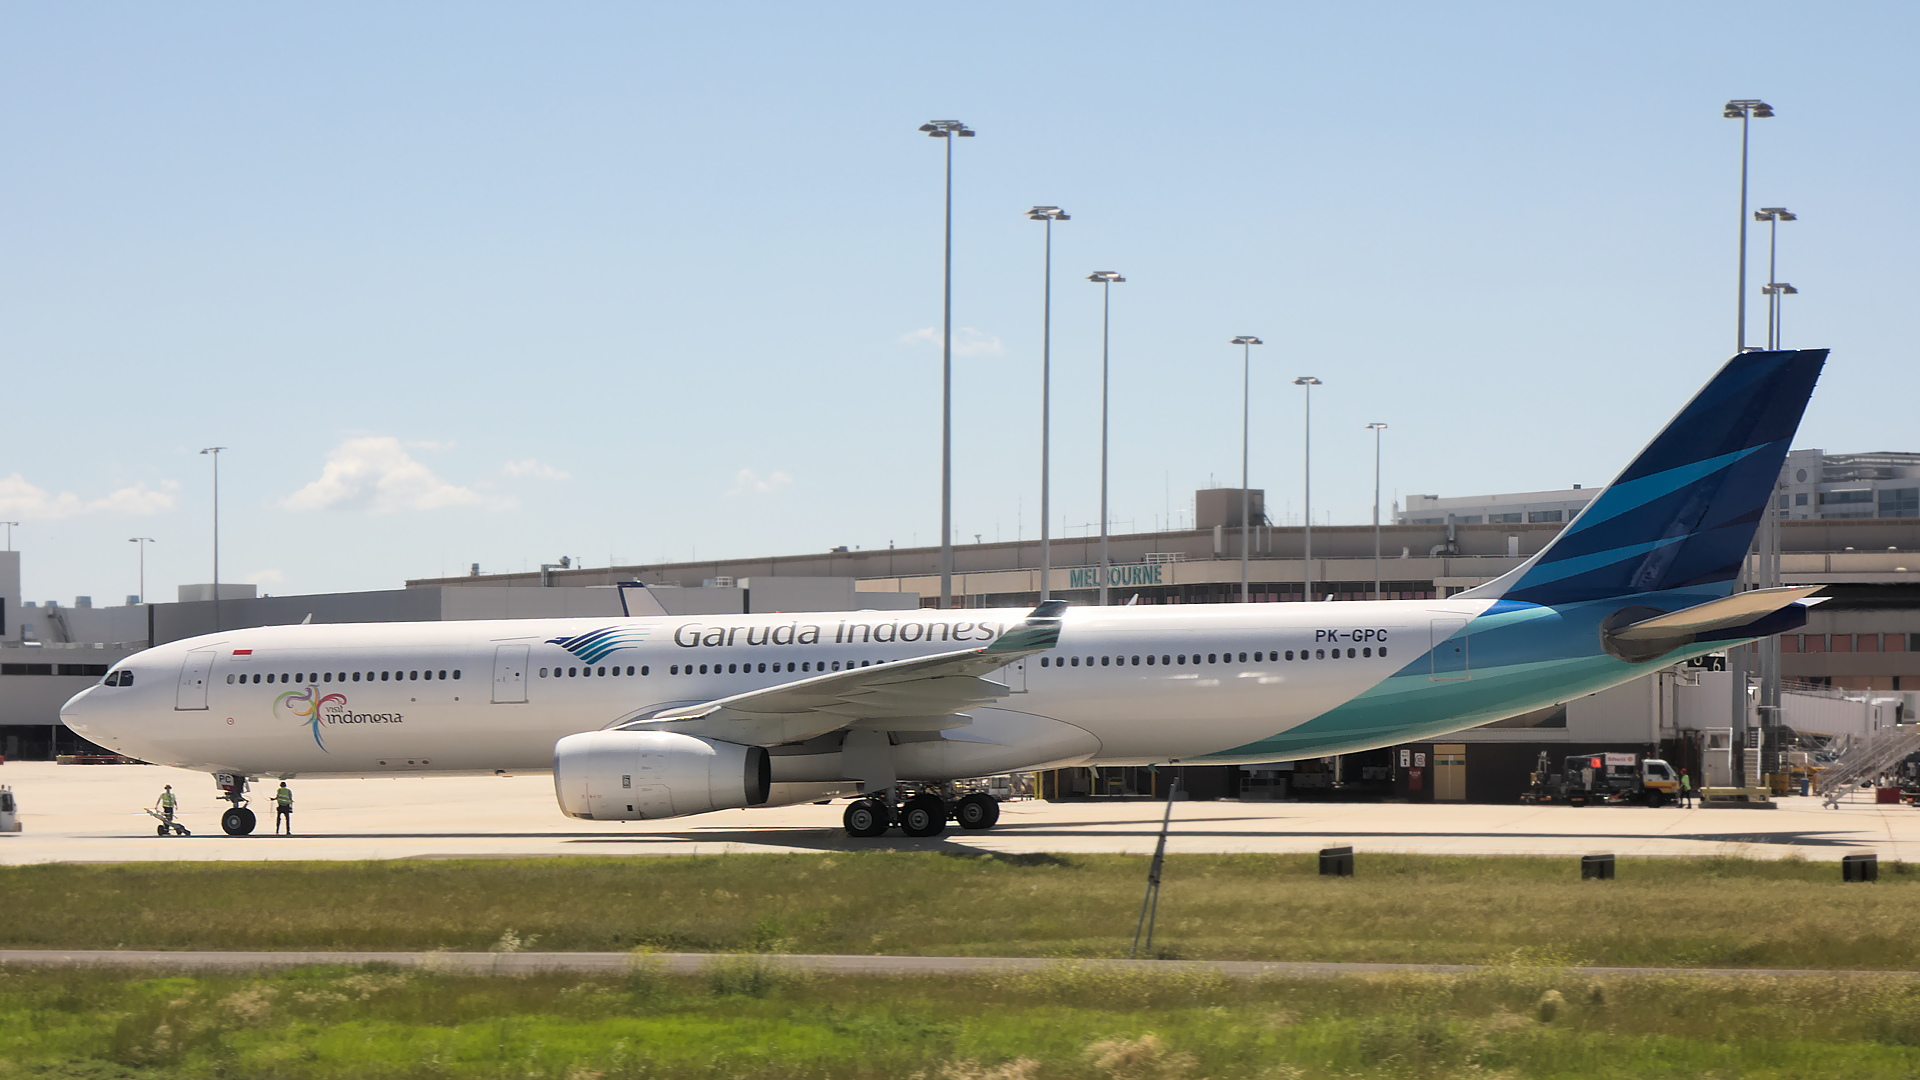 PK-GPC ✈ Garuda Indonesia Airbus A330-341 @ Melbourne-Tullamarine